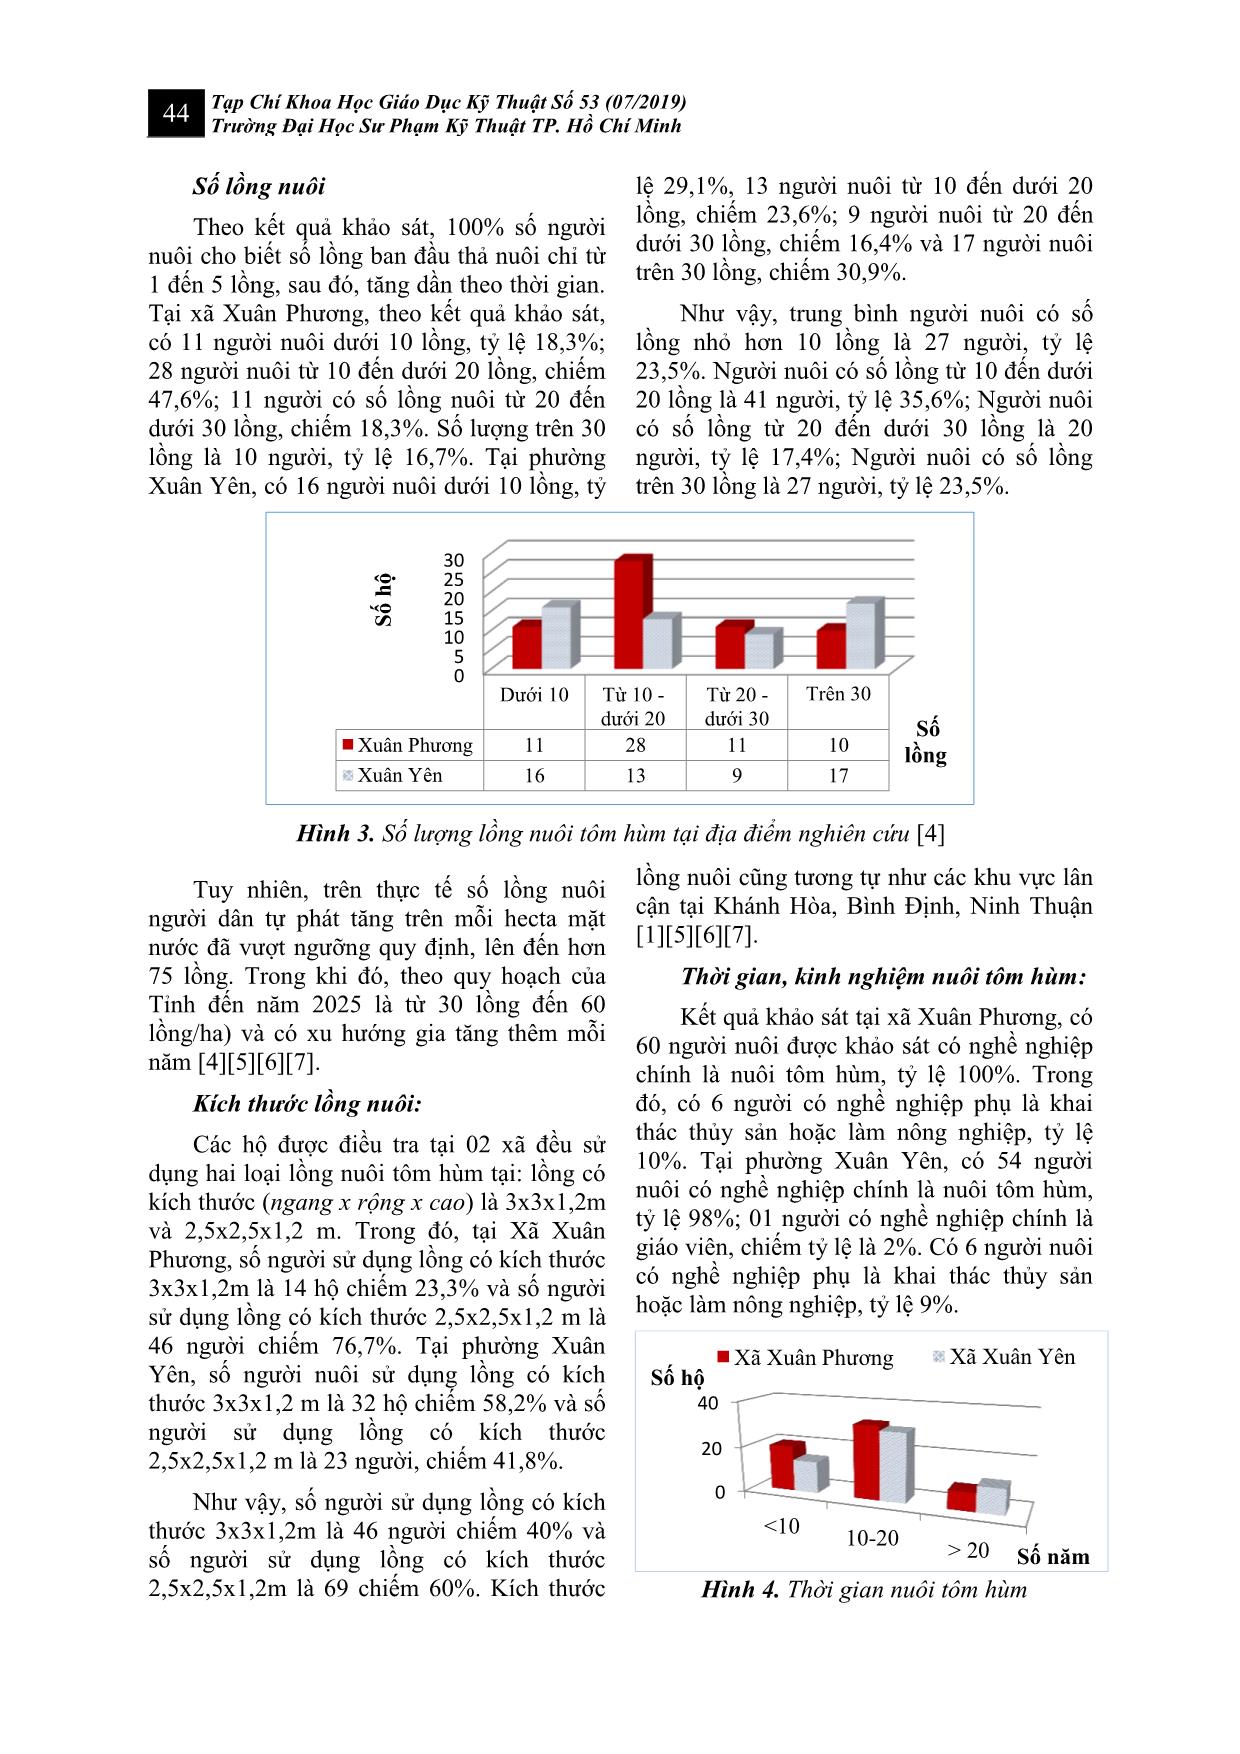 Nghiên cứu đánh giá hiện trạng và mức độ nhận thức của người nuôi tại vùng nuôi tôm hùm lồng bè thuộc vịnh Xuân Đài tỉnh Phú Yên trang 4